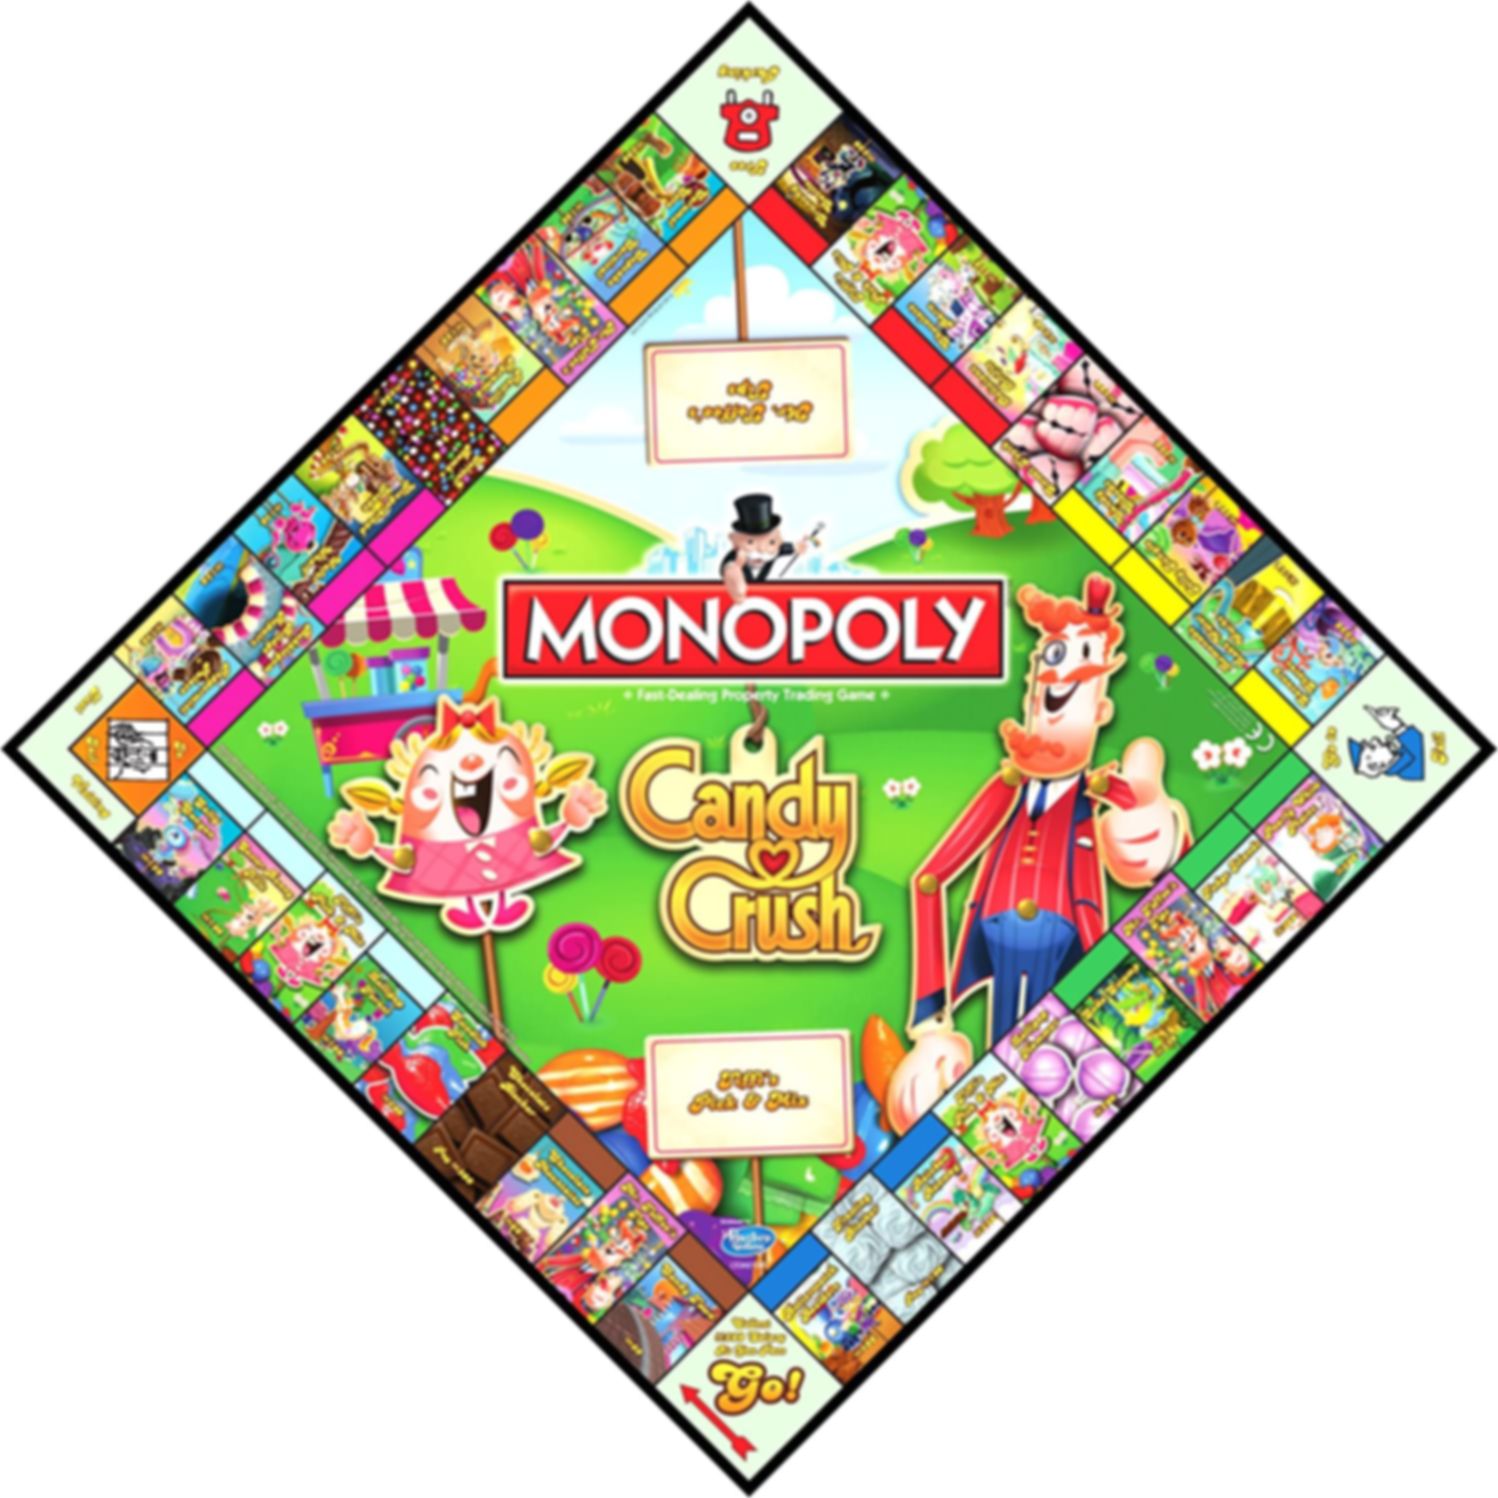 Monopoly Candy Crush juego de mesa